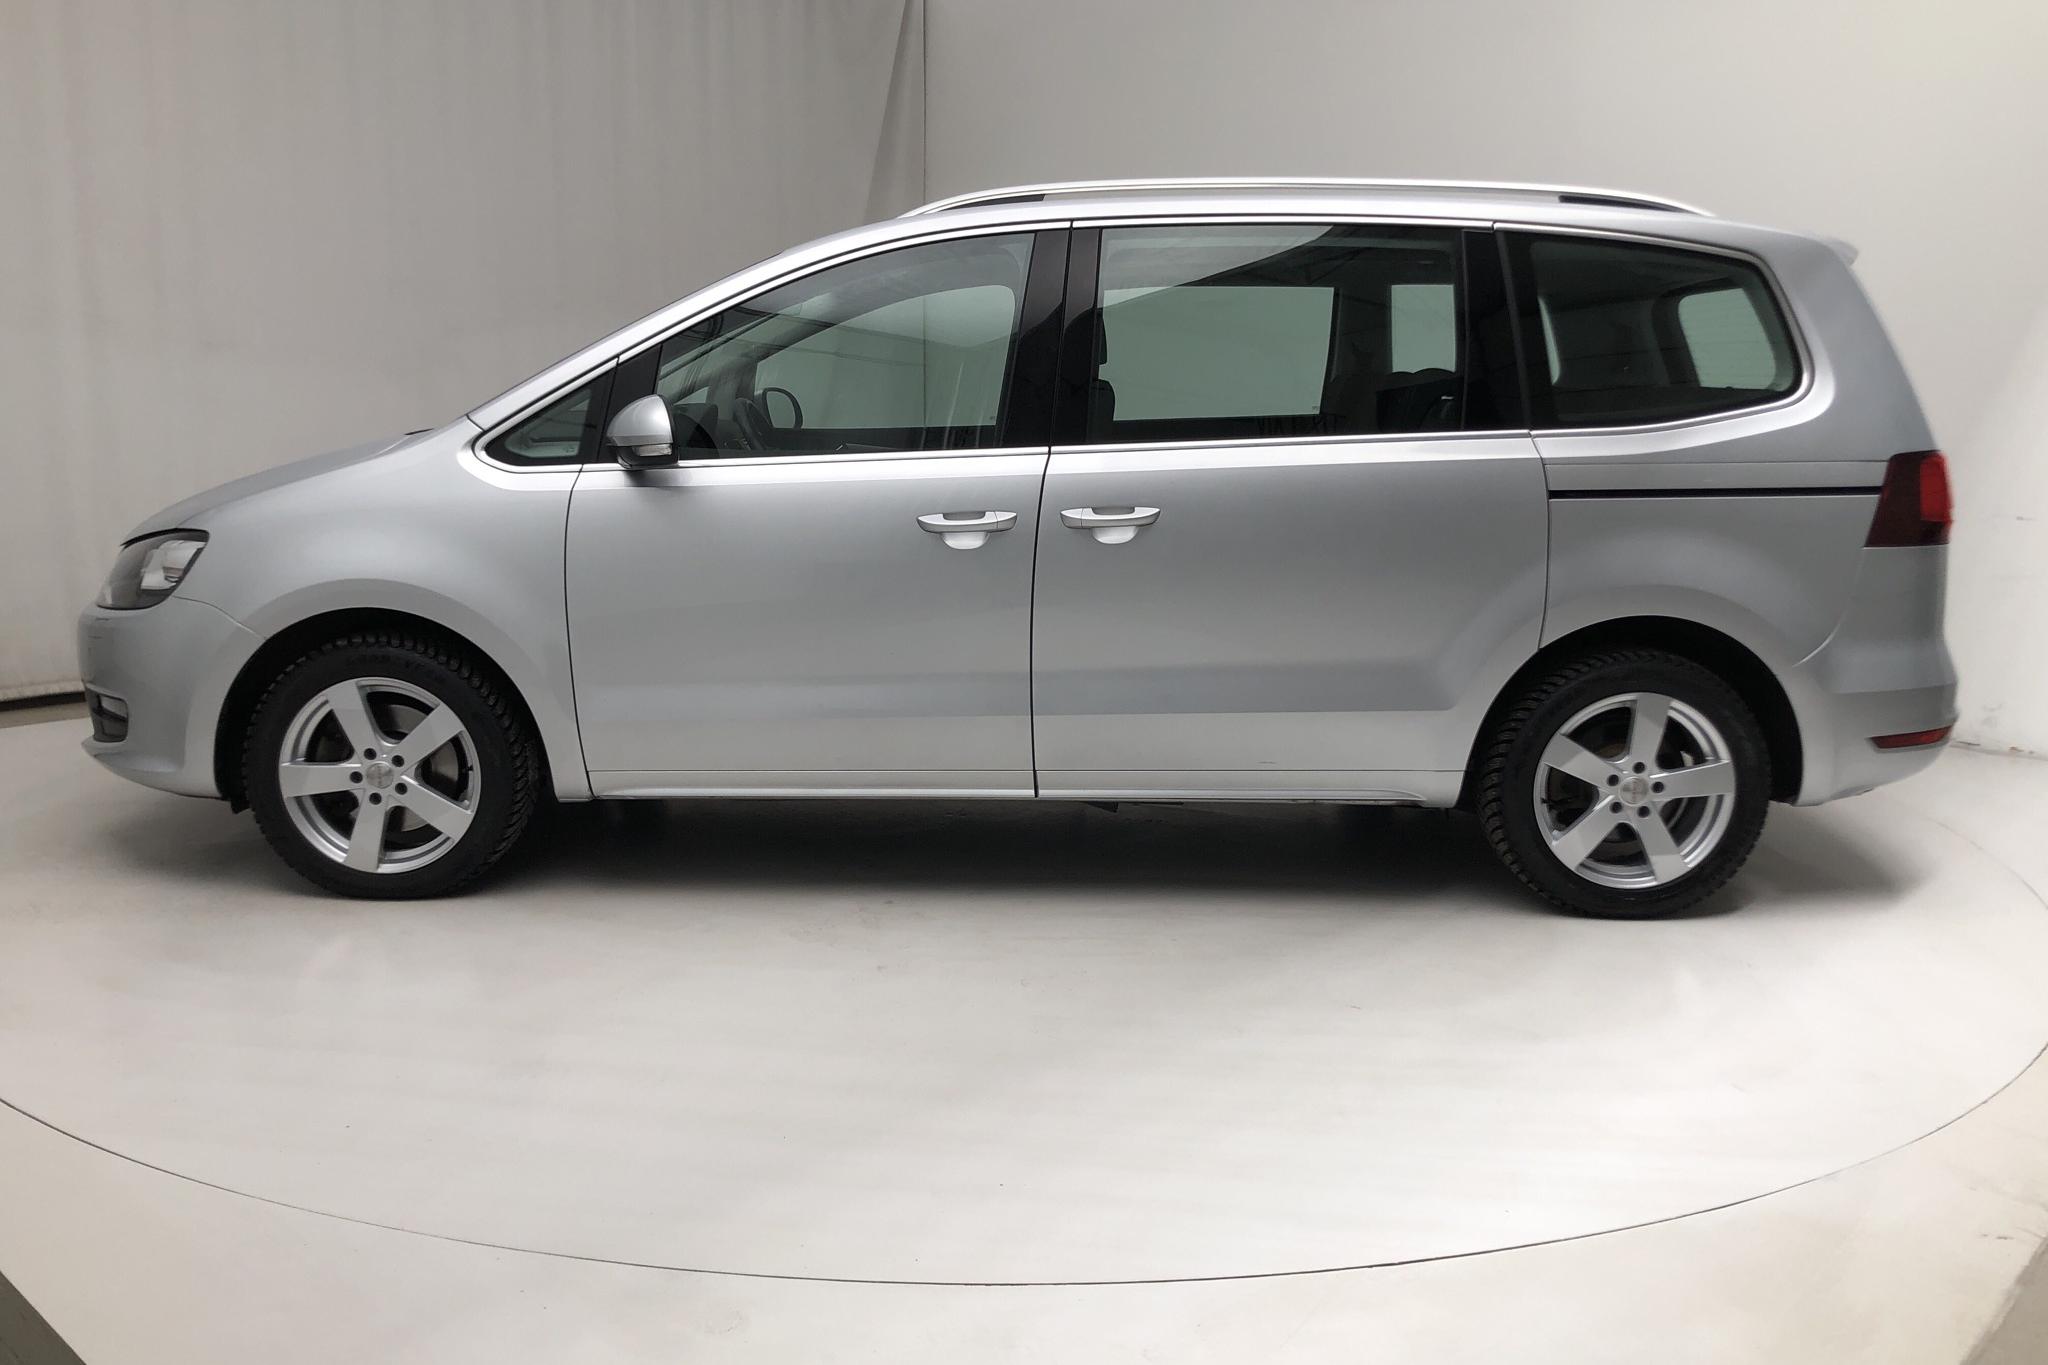 VW Sharan 2.0 TDI (150hk) - 22 020 km - Automatic - silver - 2018